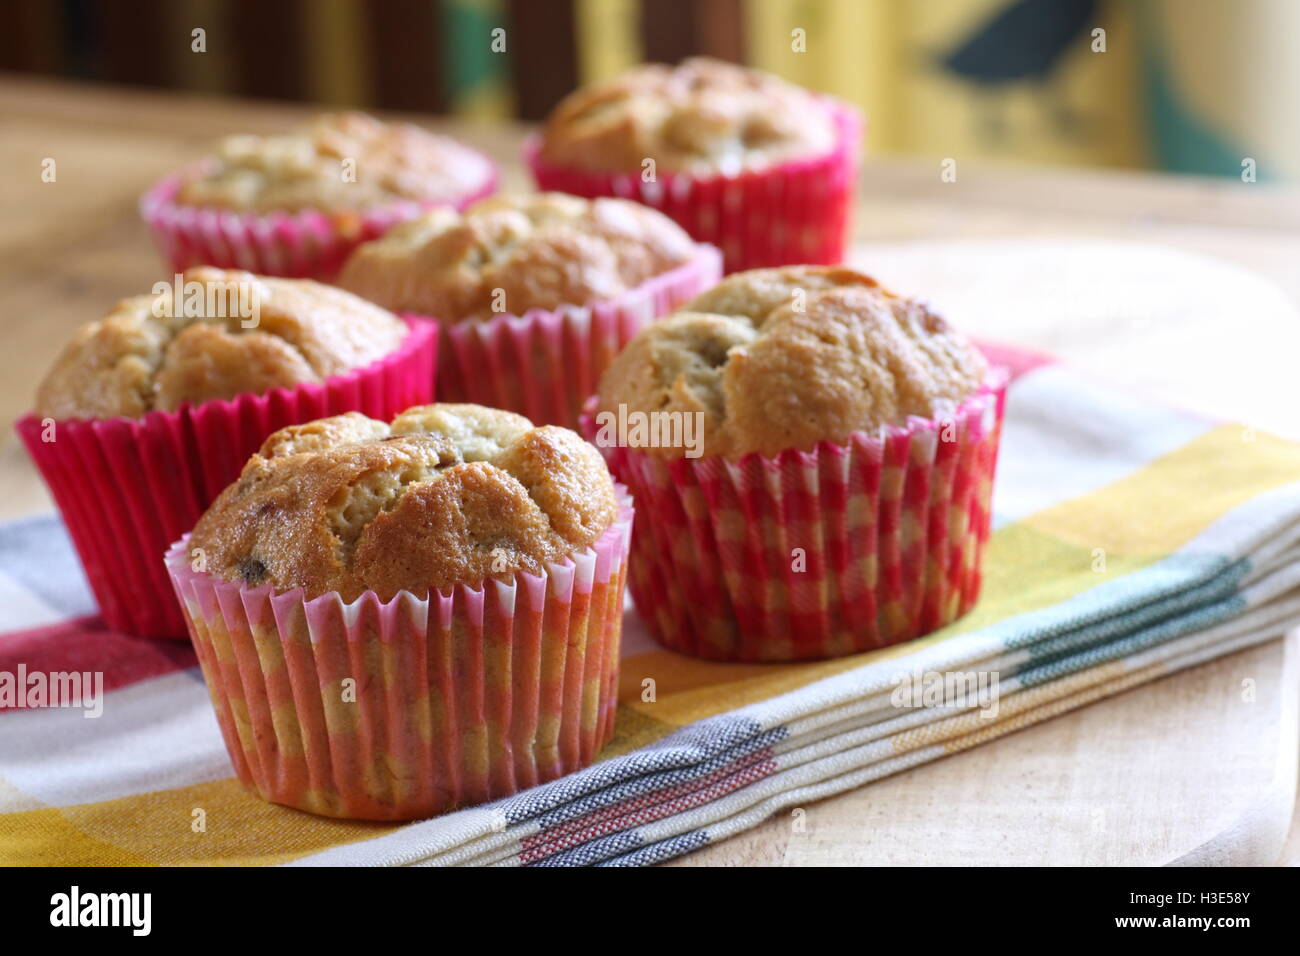 Leckere Banane und Rosinen Muffins gebacken in rosa aufgegebenes Cupcake Wrappers. Stockfoto